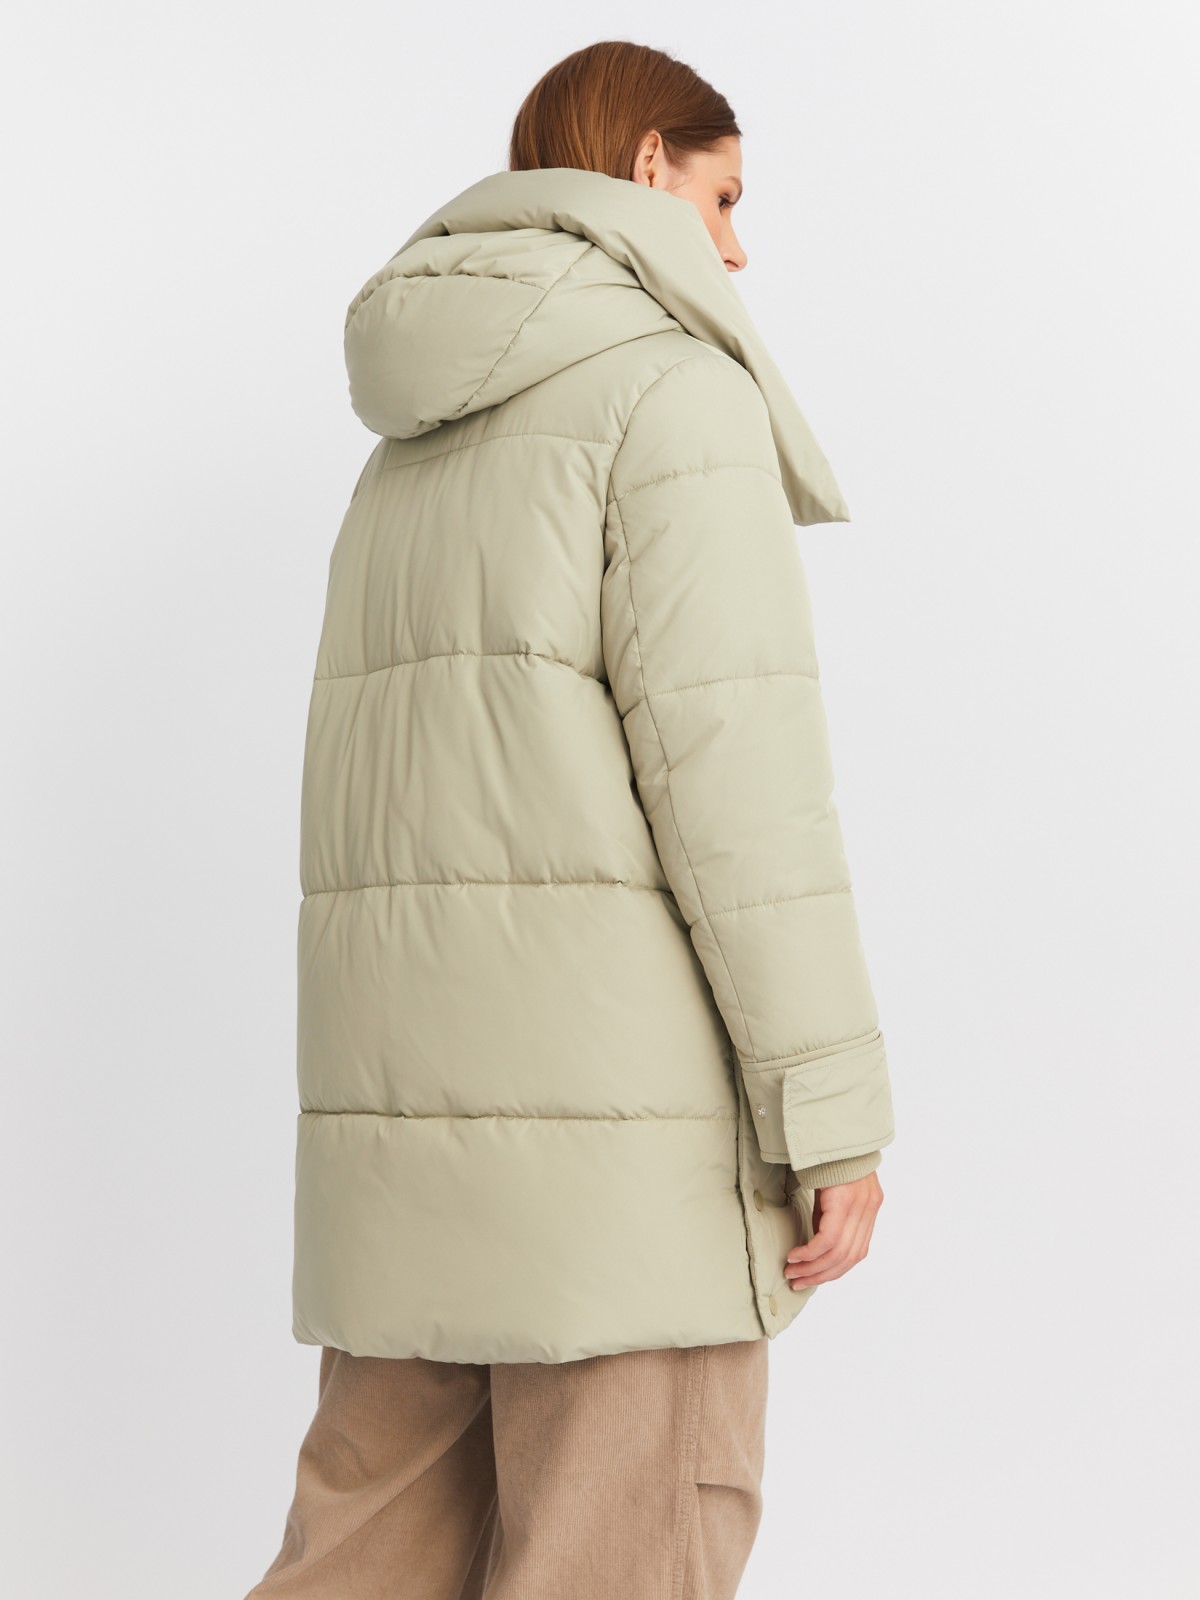 Тёплая куртка-пальто с капюшоном и боковыми шлицами zolla 022425212054, цвет хаки, размер XS - фото 6